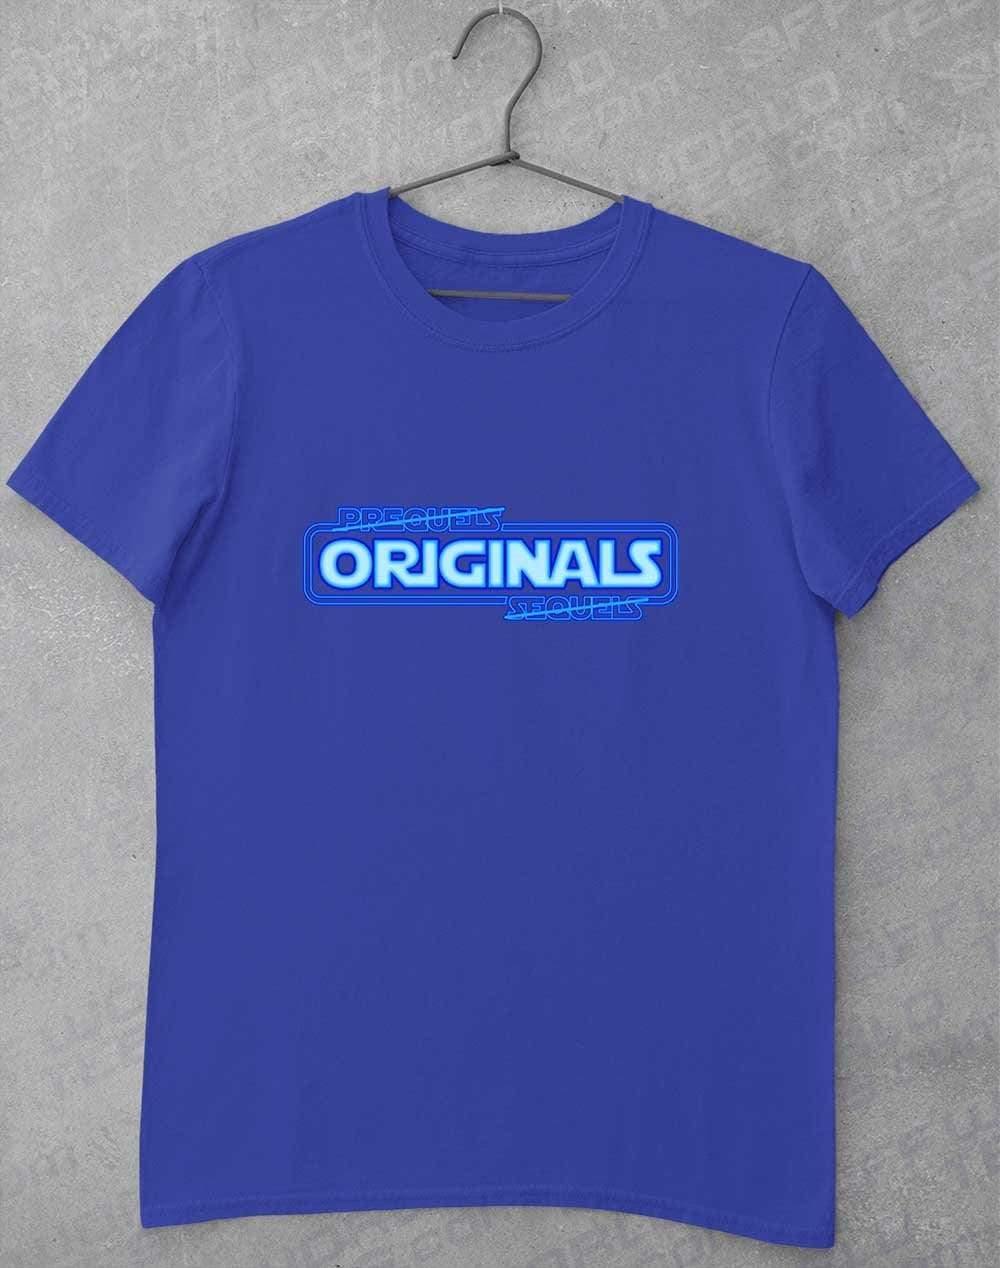 Originals FTW - T-Shirt S / Royal  - Off World Tees